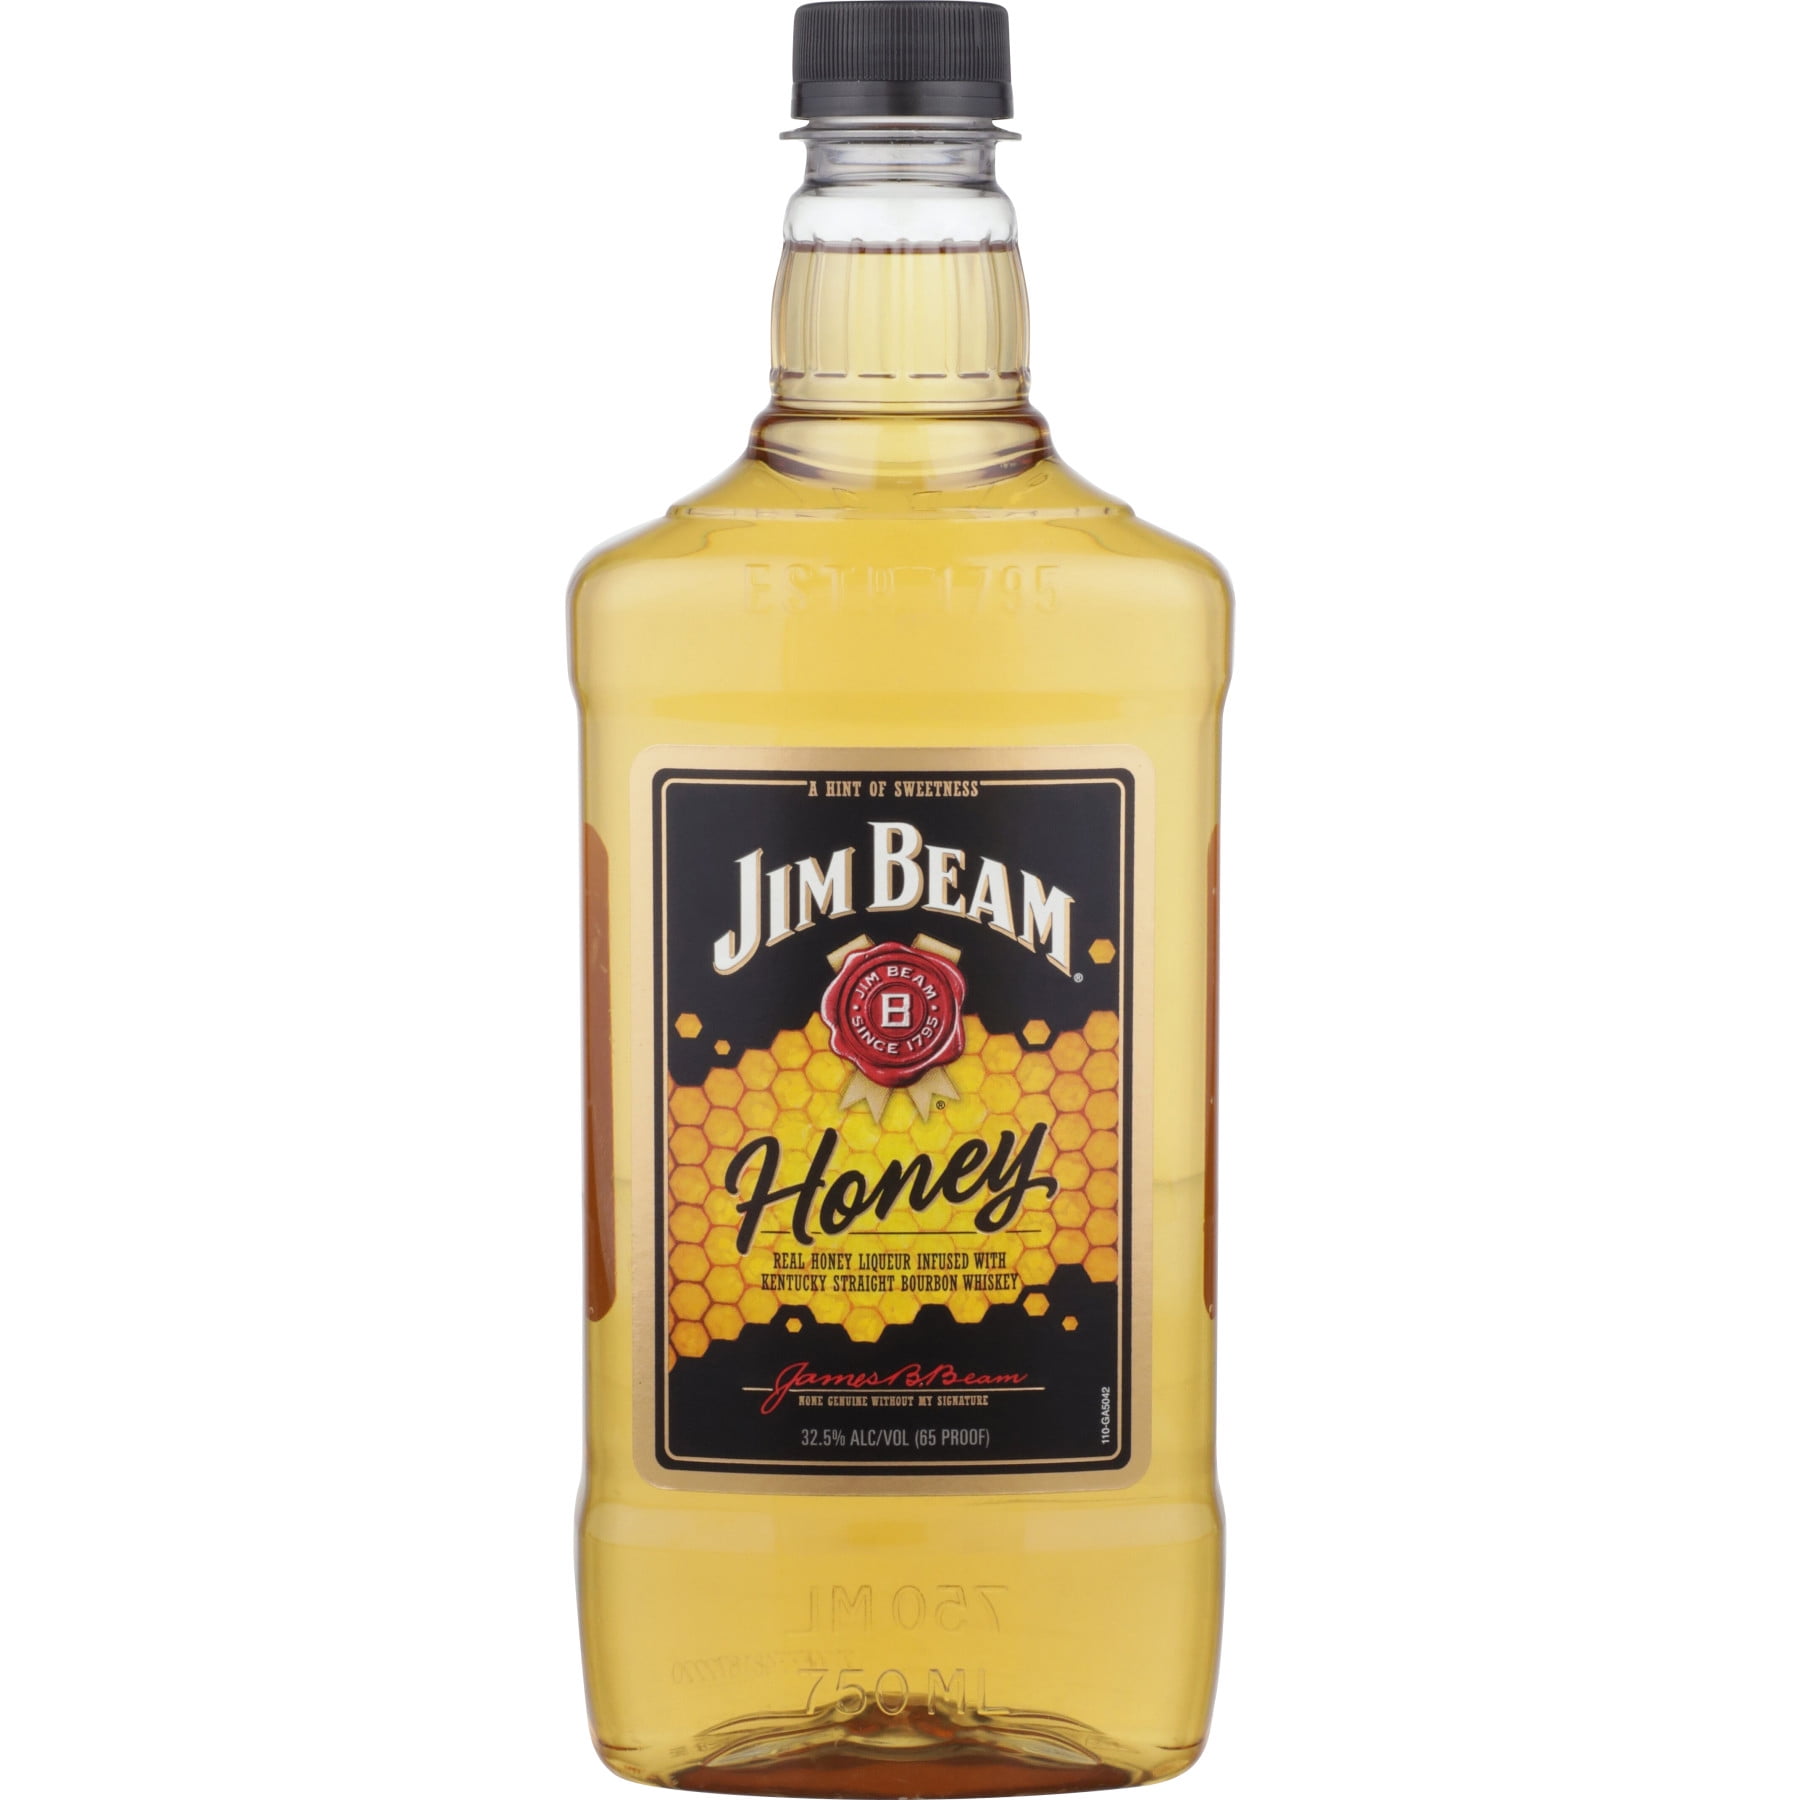 Jim Beam Honey Flavored Whiskey, 750 ml PET Bottle, ABV 32.5%